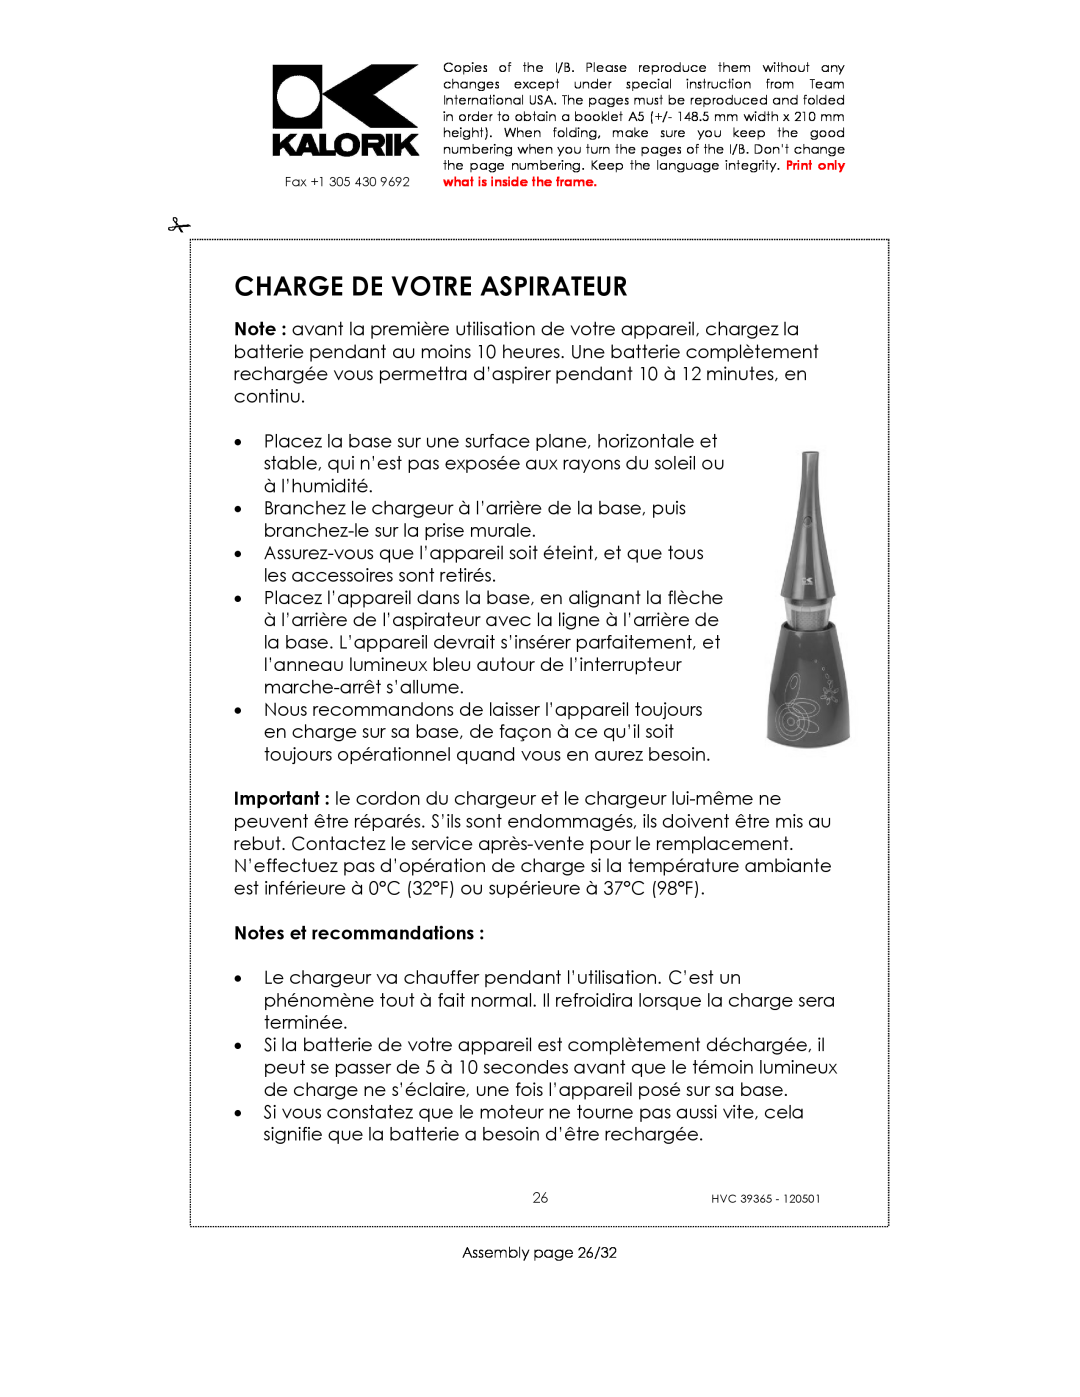 Kalorik HVC 39365 manual Charge De Votre Aspirateur, Notes et recommandations 